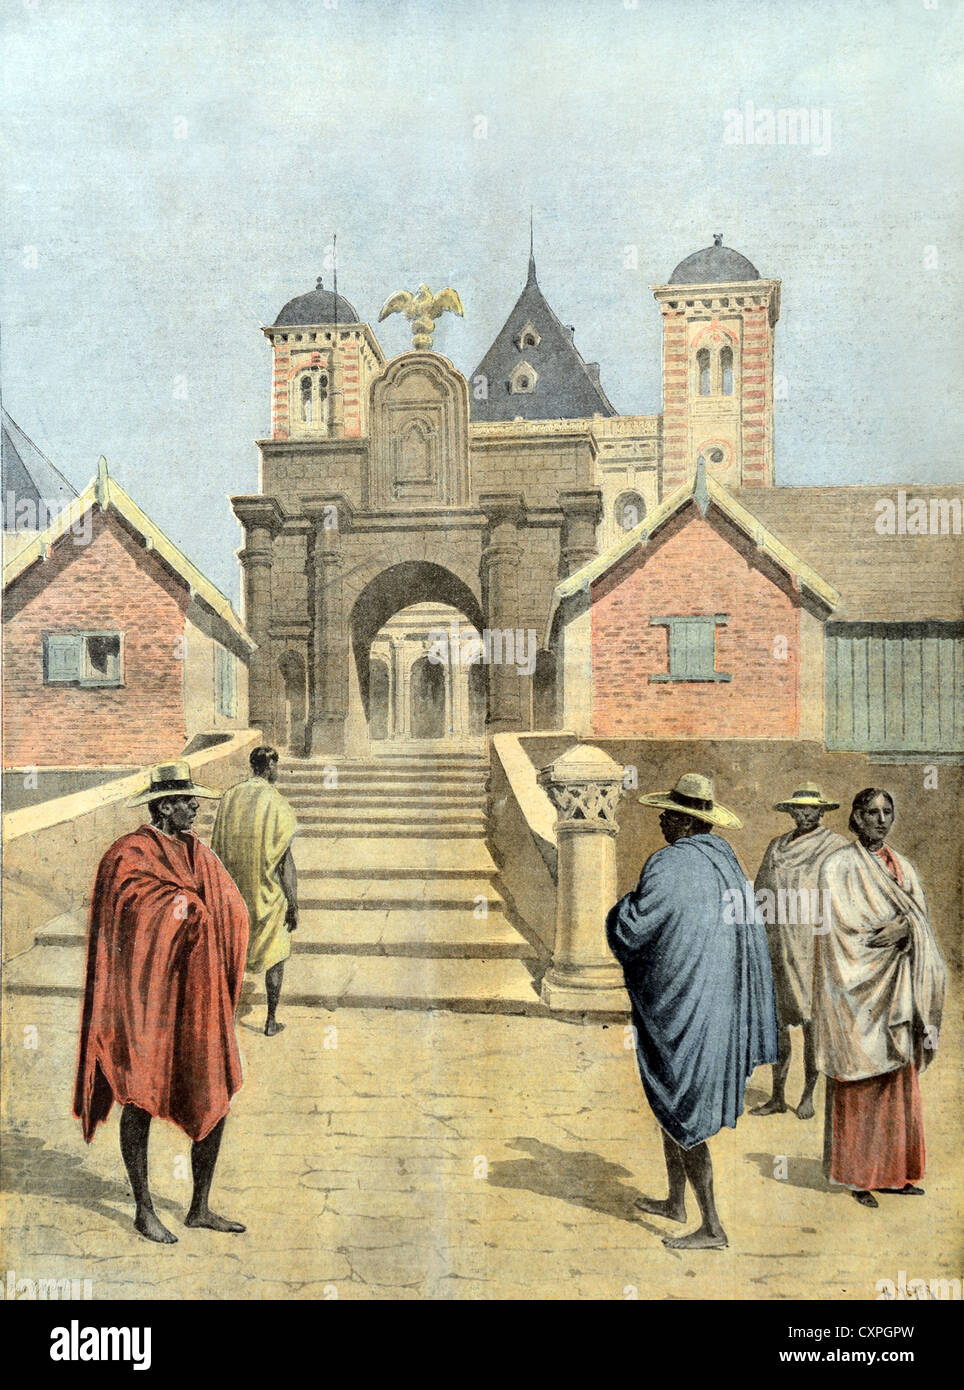 Palais de la Reine ou Rova d'Antananarivo et Malgaches devant la porte du Palais principal Antananarivo Madagascar (1895) gravure ou illustration historique ou ancienne Banque D'Images